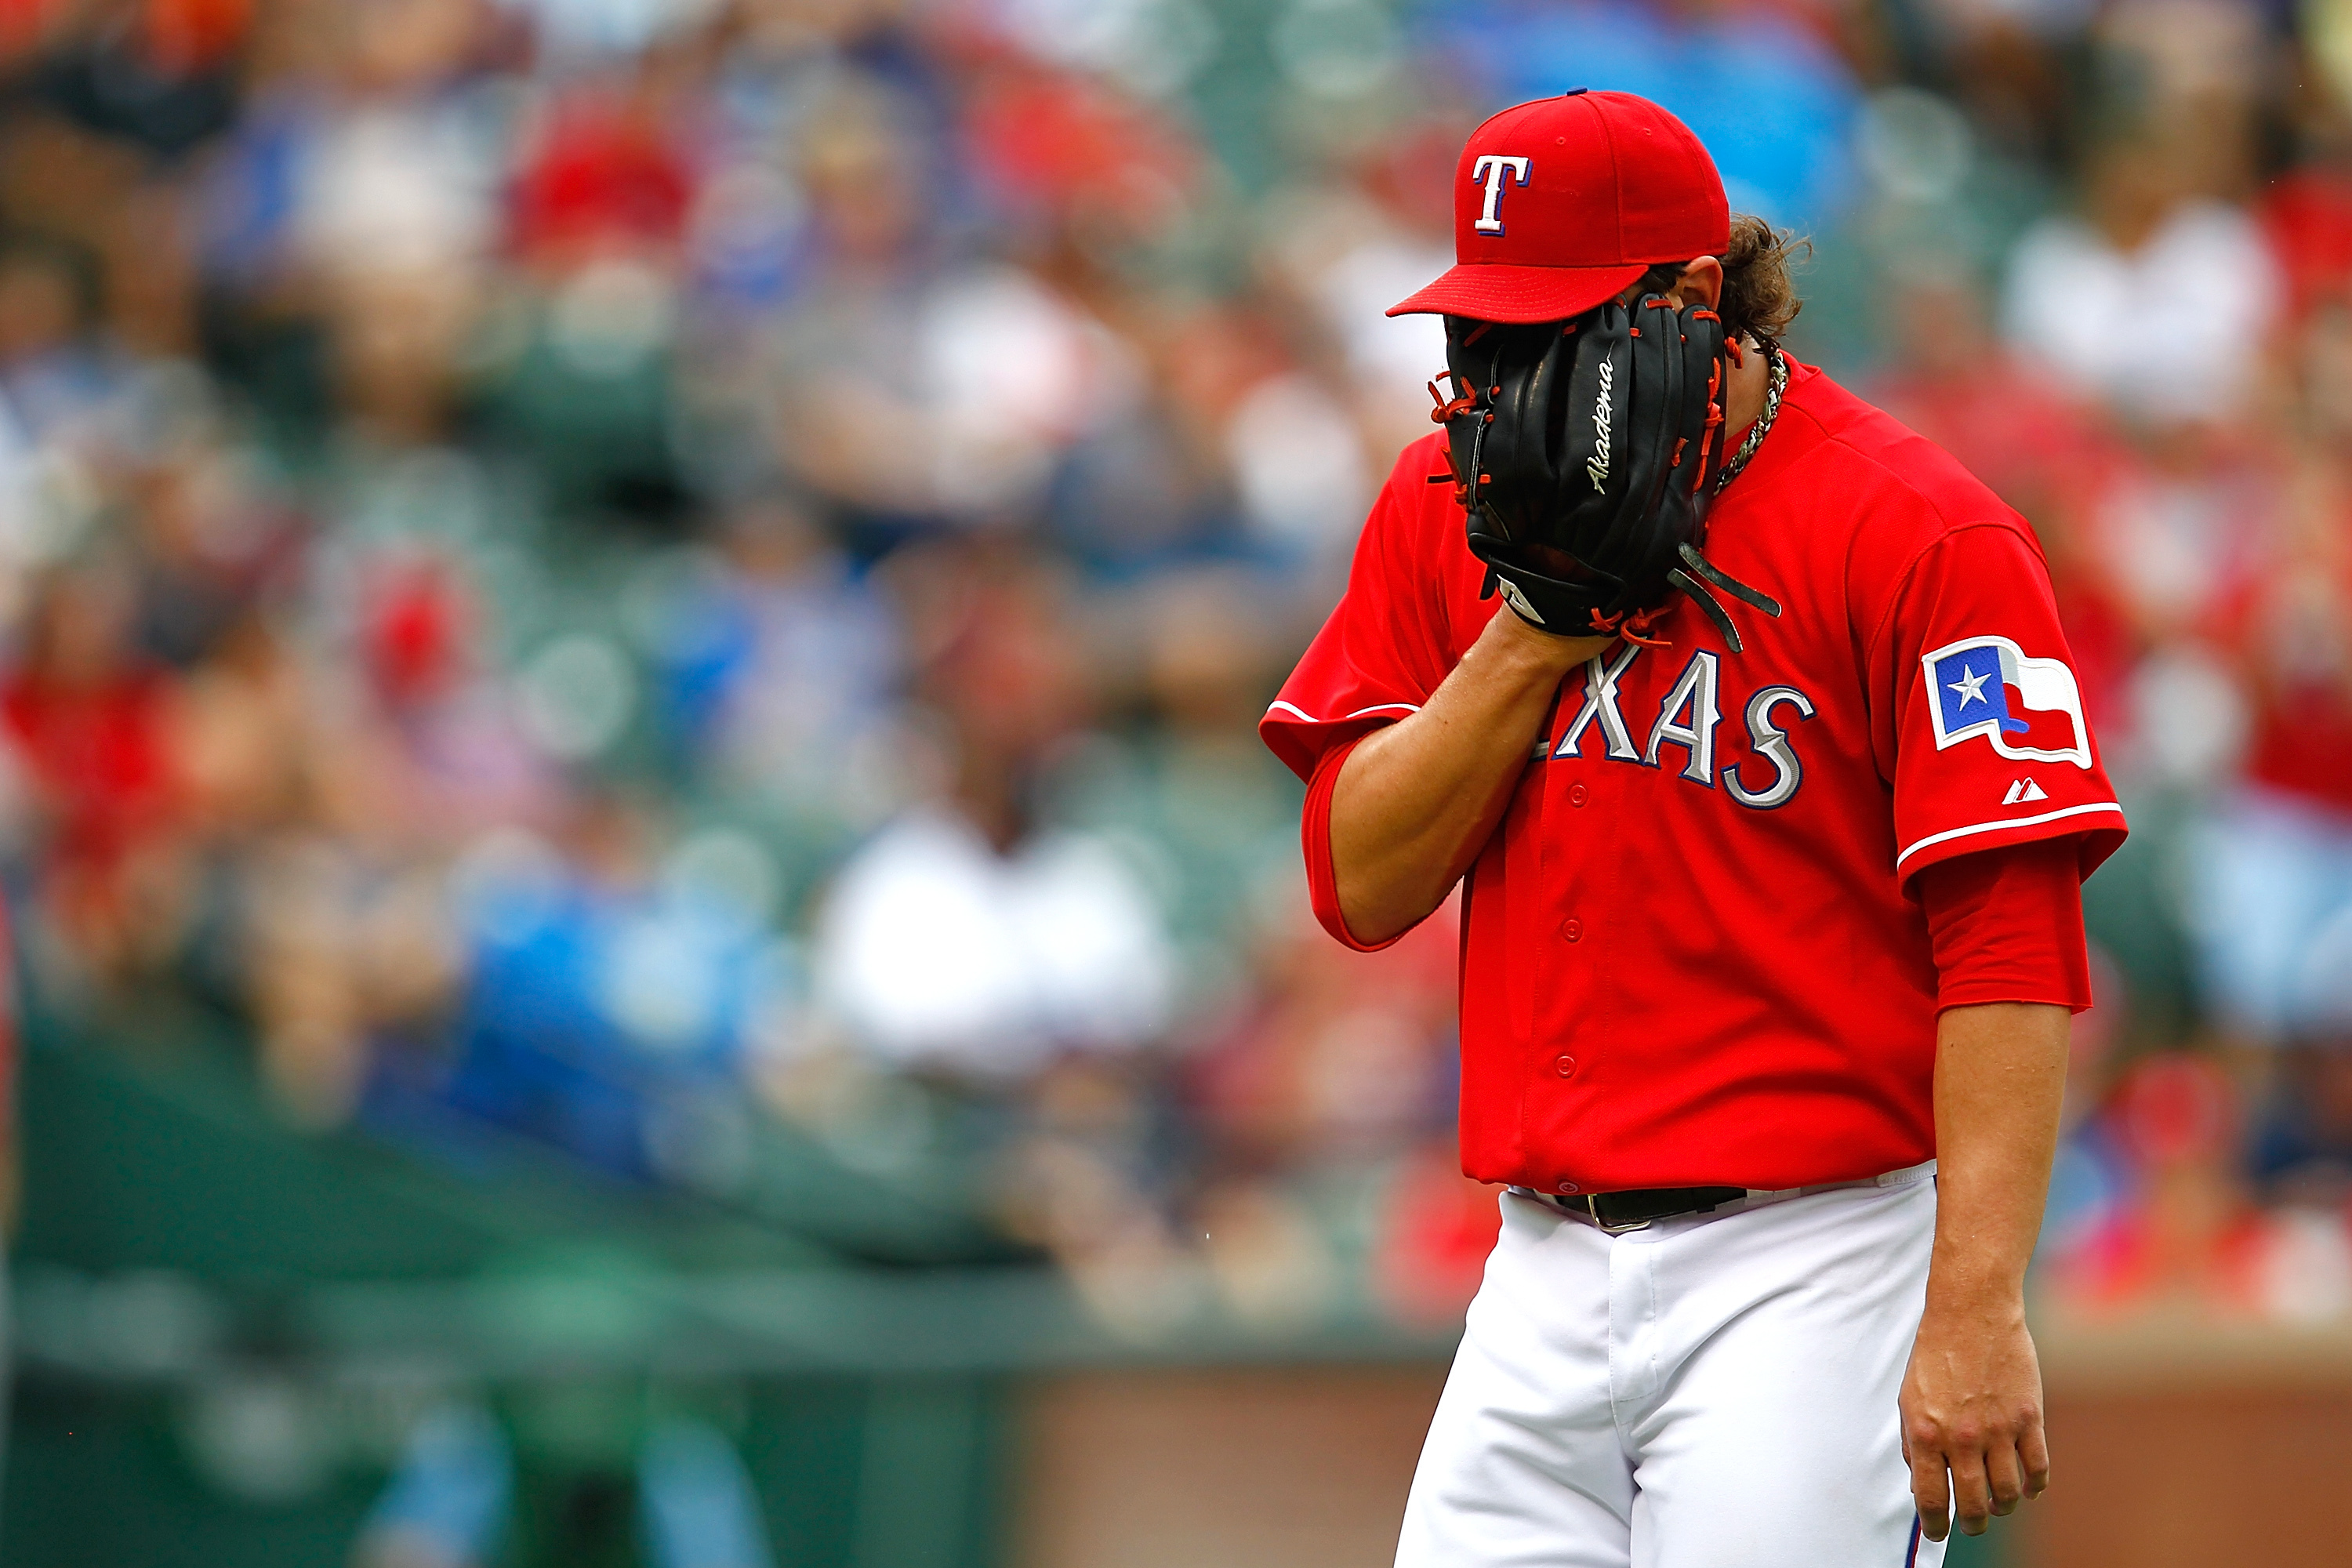 Texas Rangers' Derek Holland is sporting a 'Wild Thing' haircut